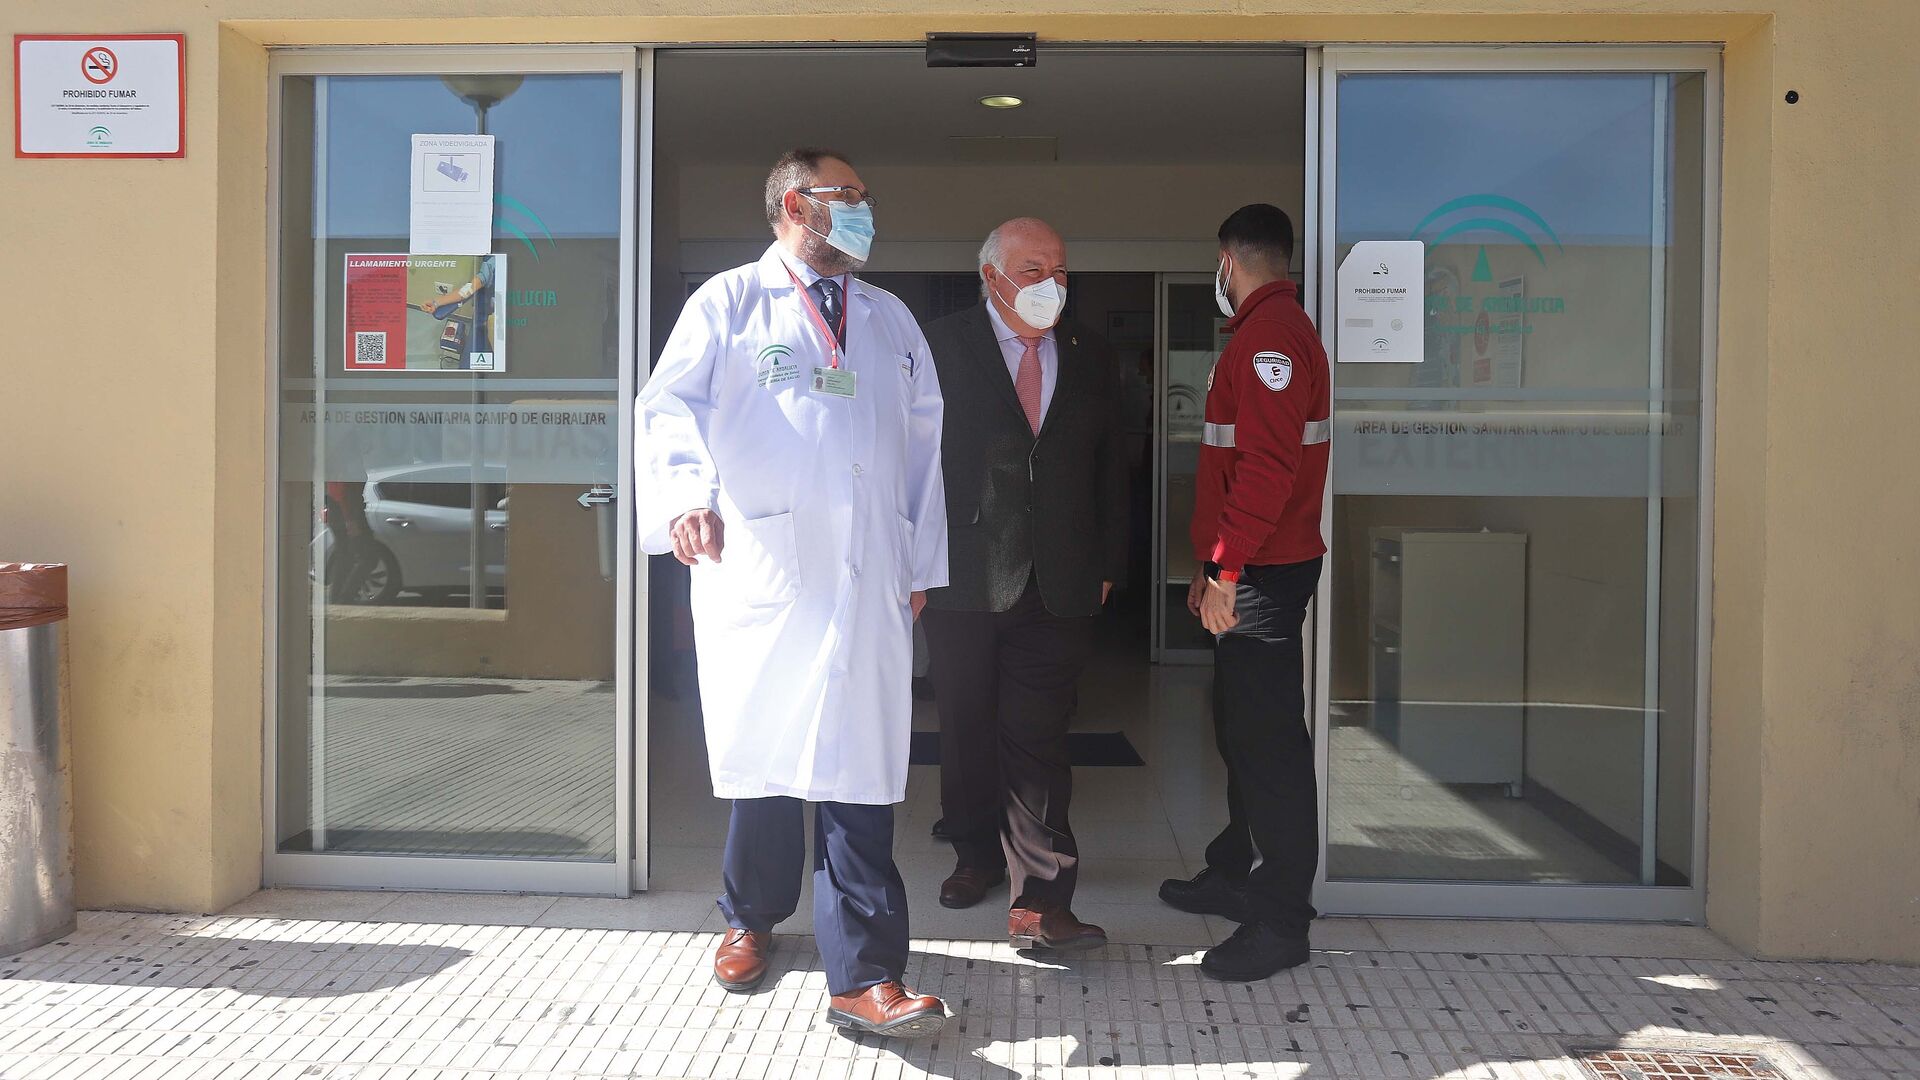 Visita de Jes&uacute;s Aguirre al hospital Punta Europa en Algeciras